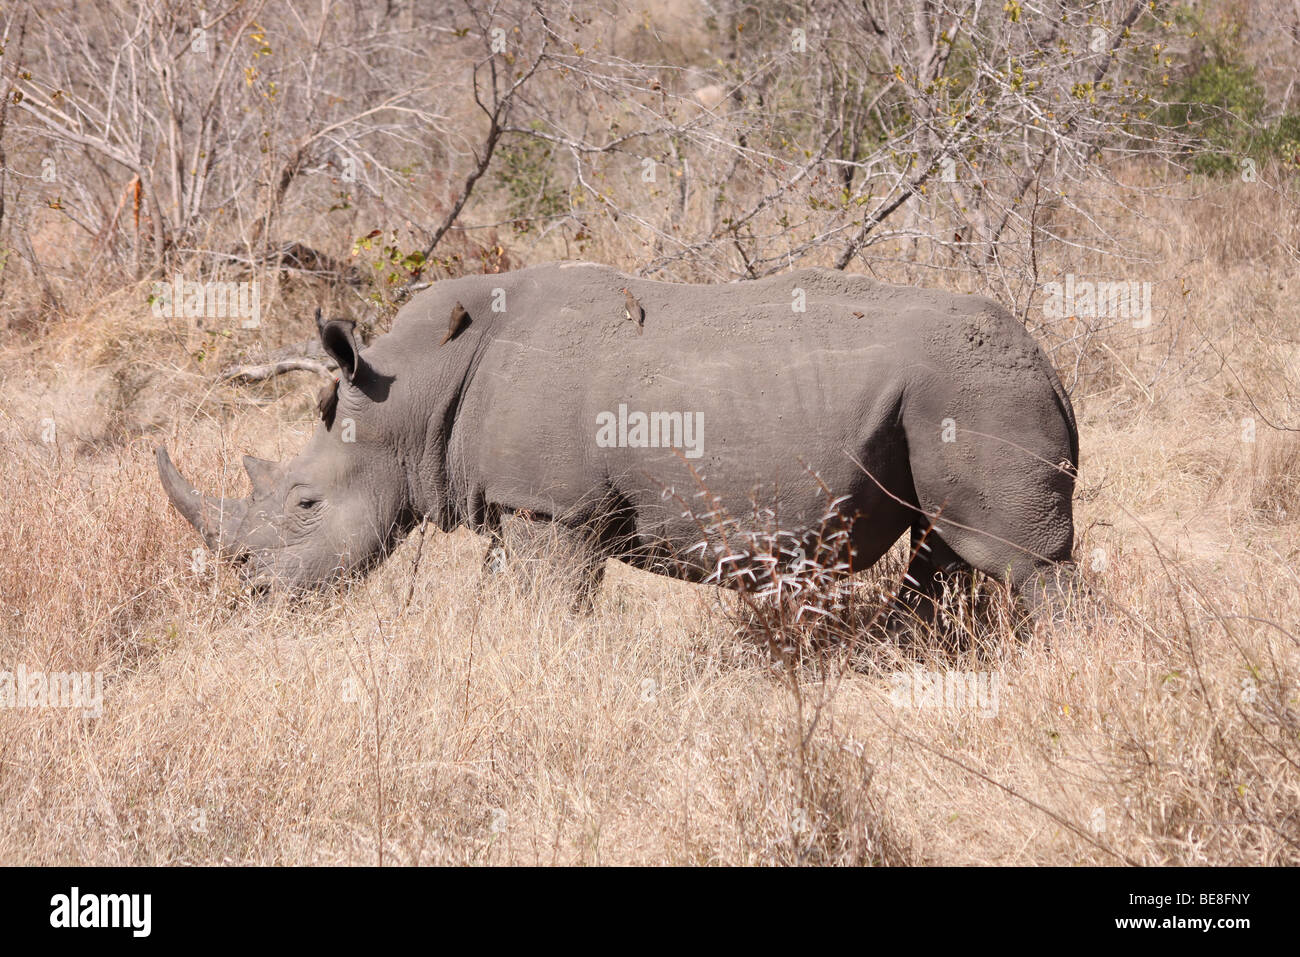 Rhinocéros blanc Ceratotherium simum dans le Parc National Kruger, Afrique du Sud Banque D'Images